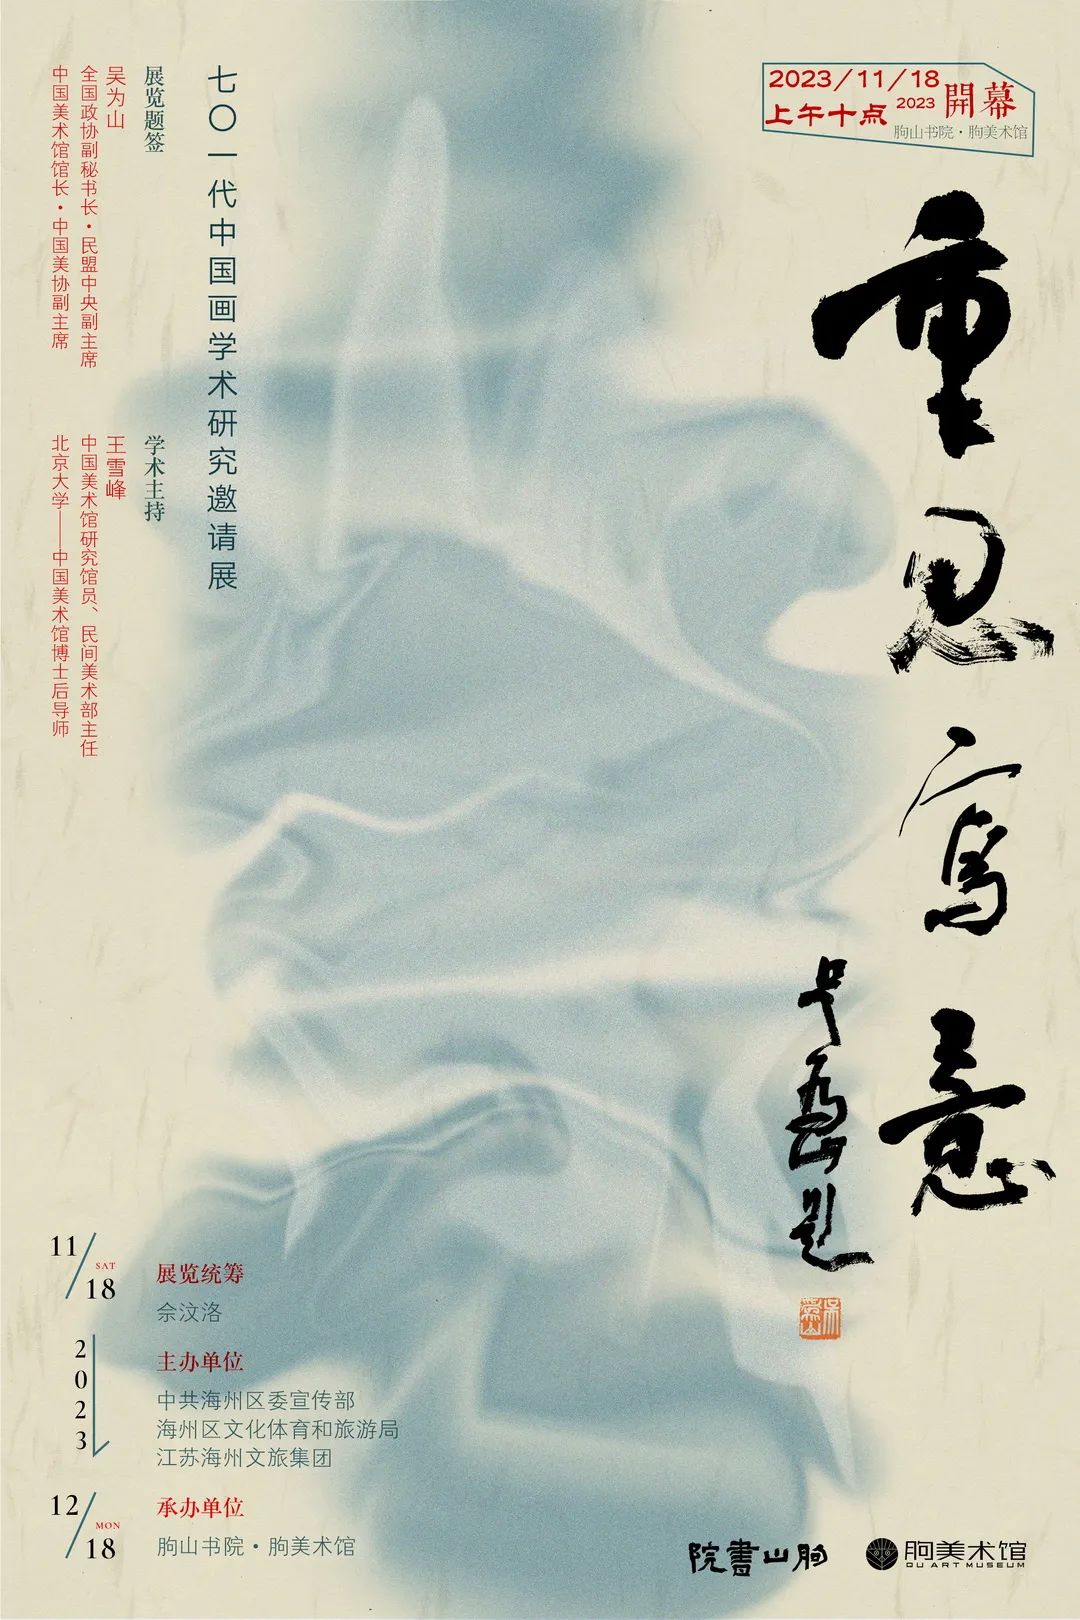 尚莹辉丨重思写意——70一代中国画学术研究邀请展